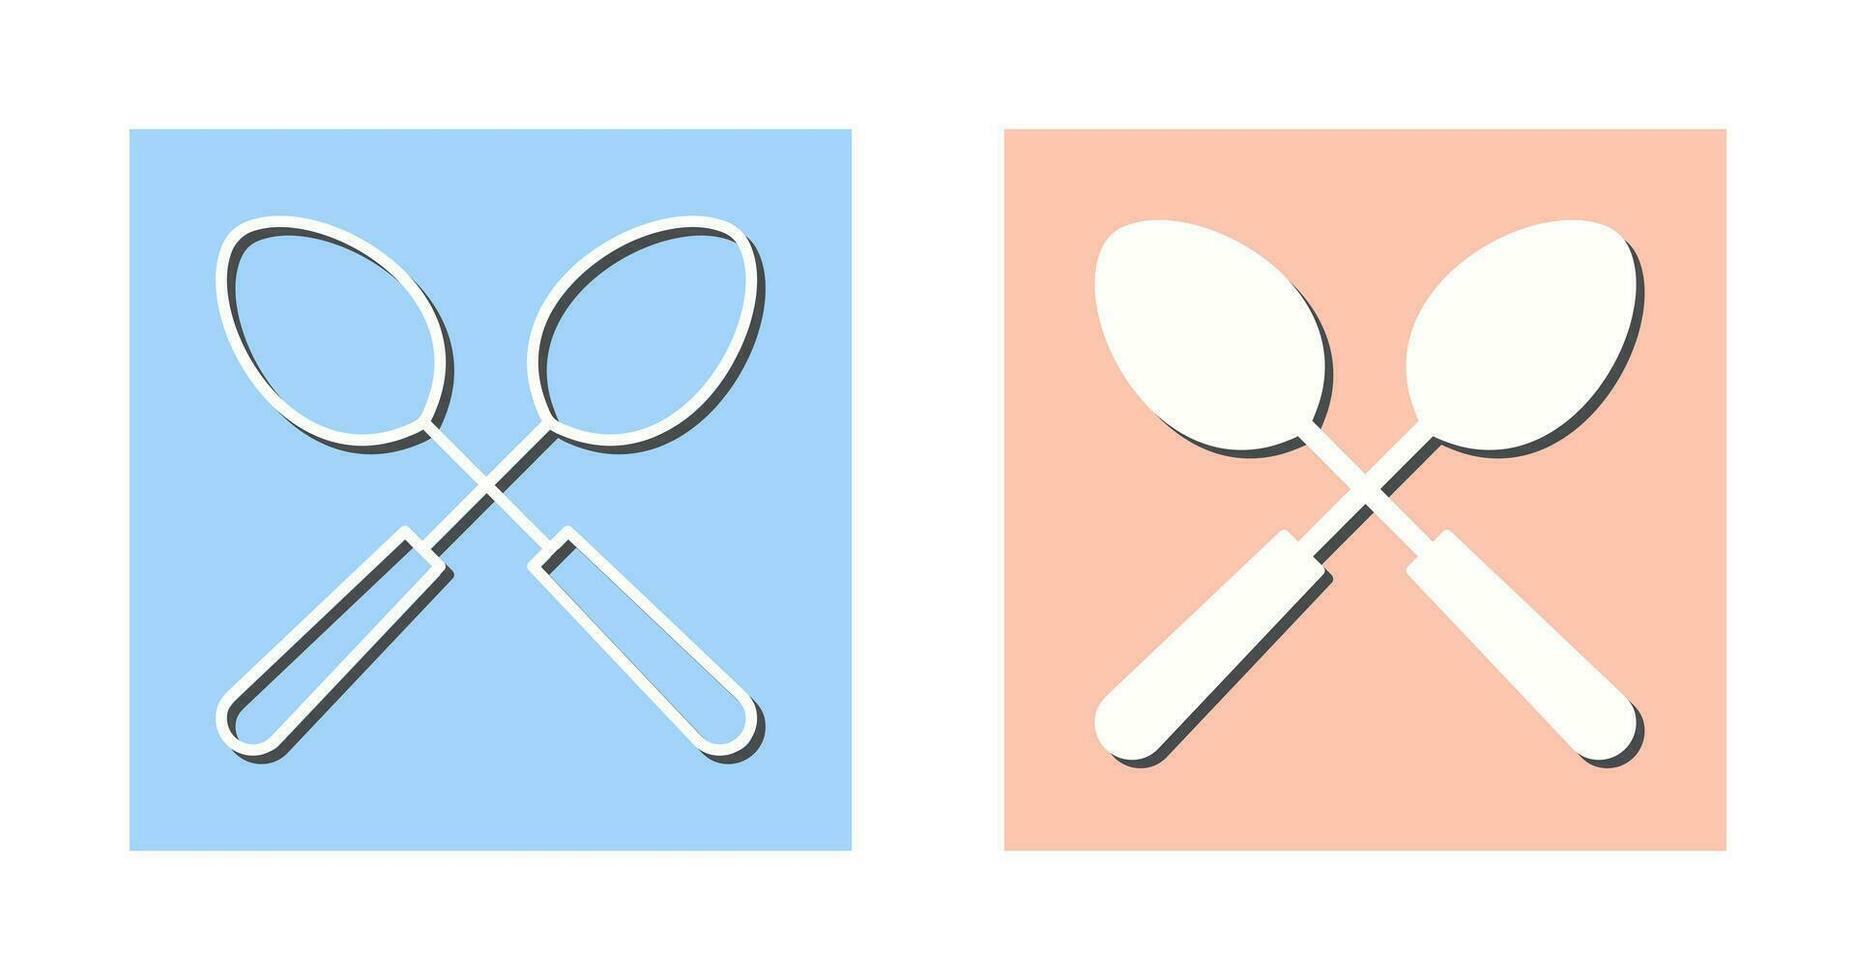 Spoons Vector Icon